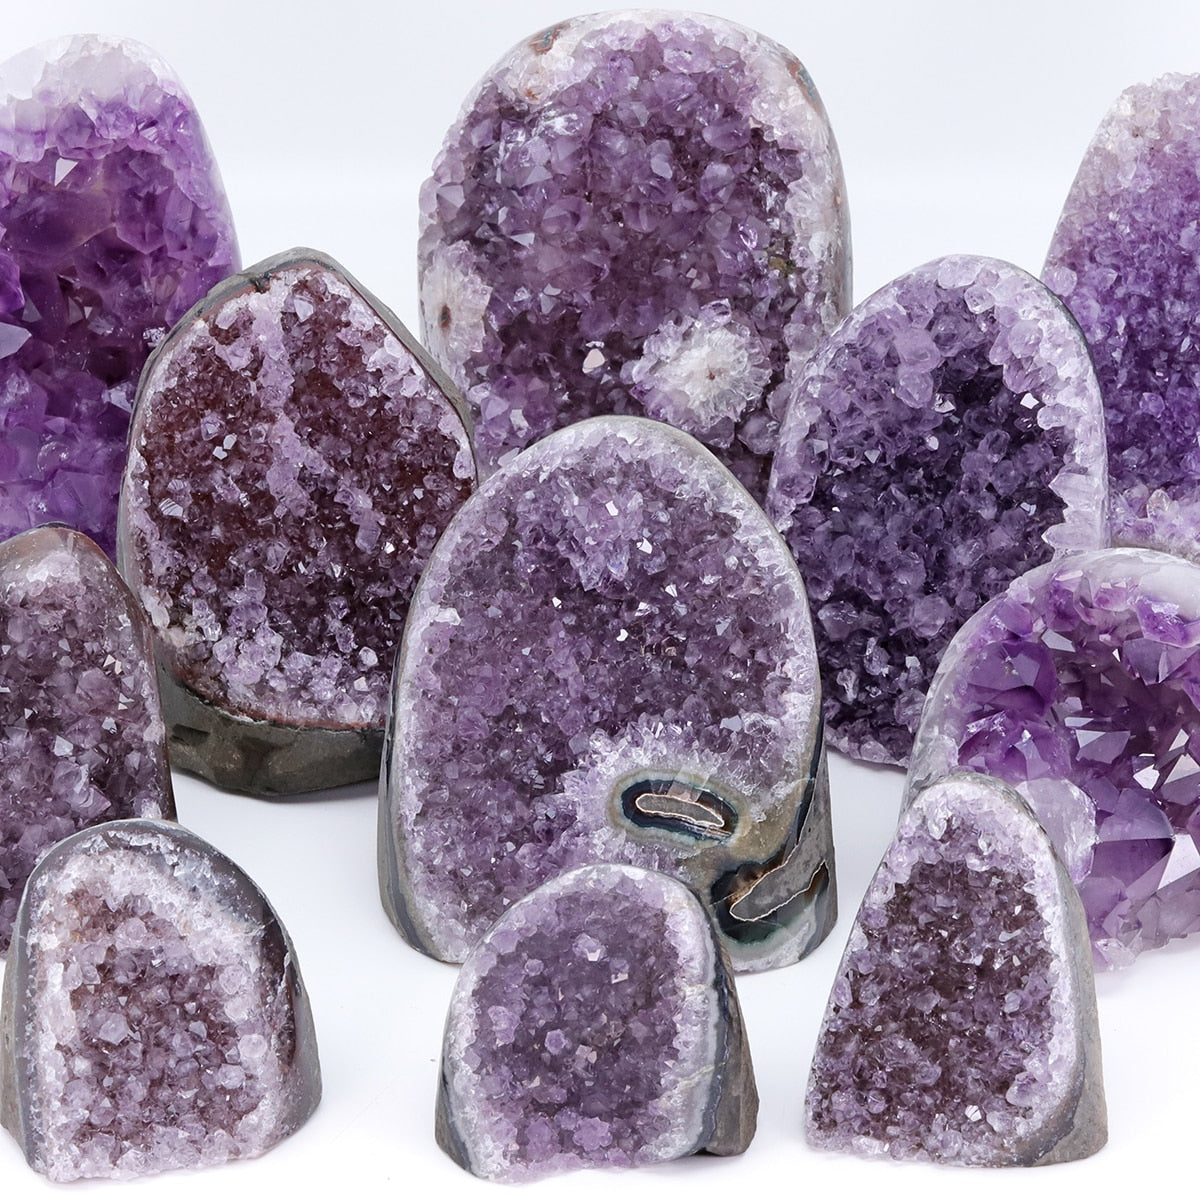 Natural Amethyst Geode Crystal Quartz Cluster Dream Specimen Energy Healing Thunder Egg Wholesale